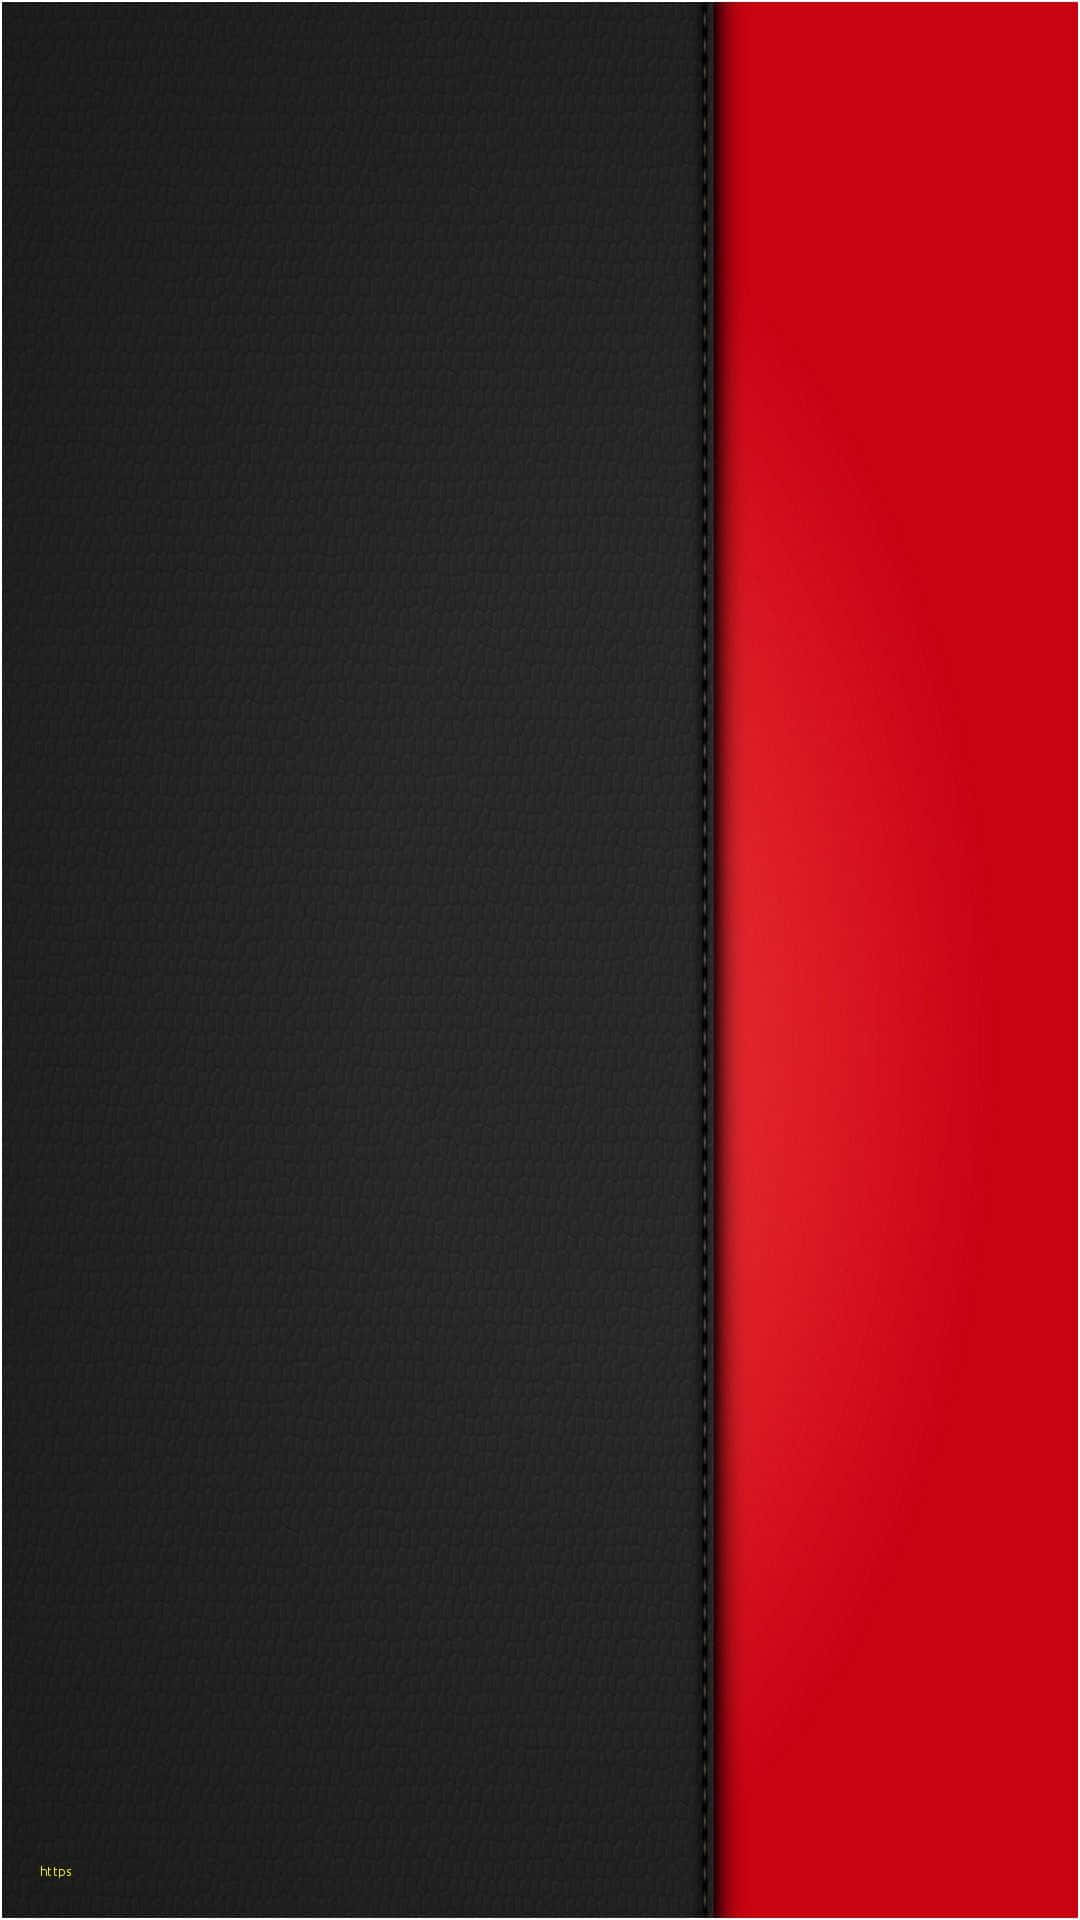 Muestratu Estilo Con El Nuevo Iphone Negro Y Rojo. Fondo de pantalla